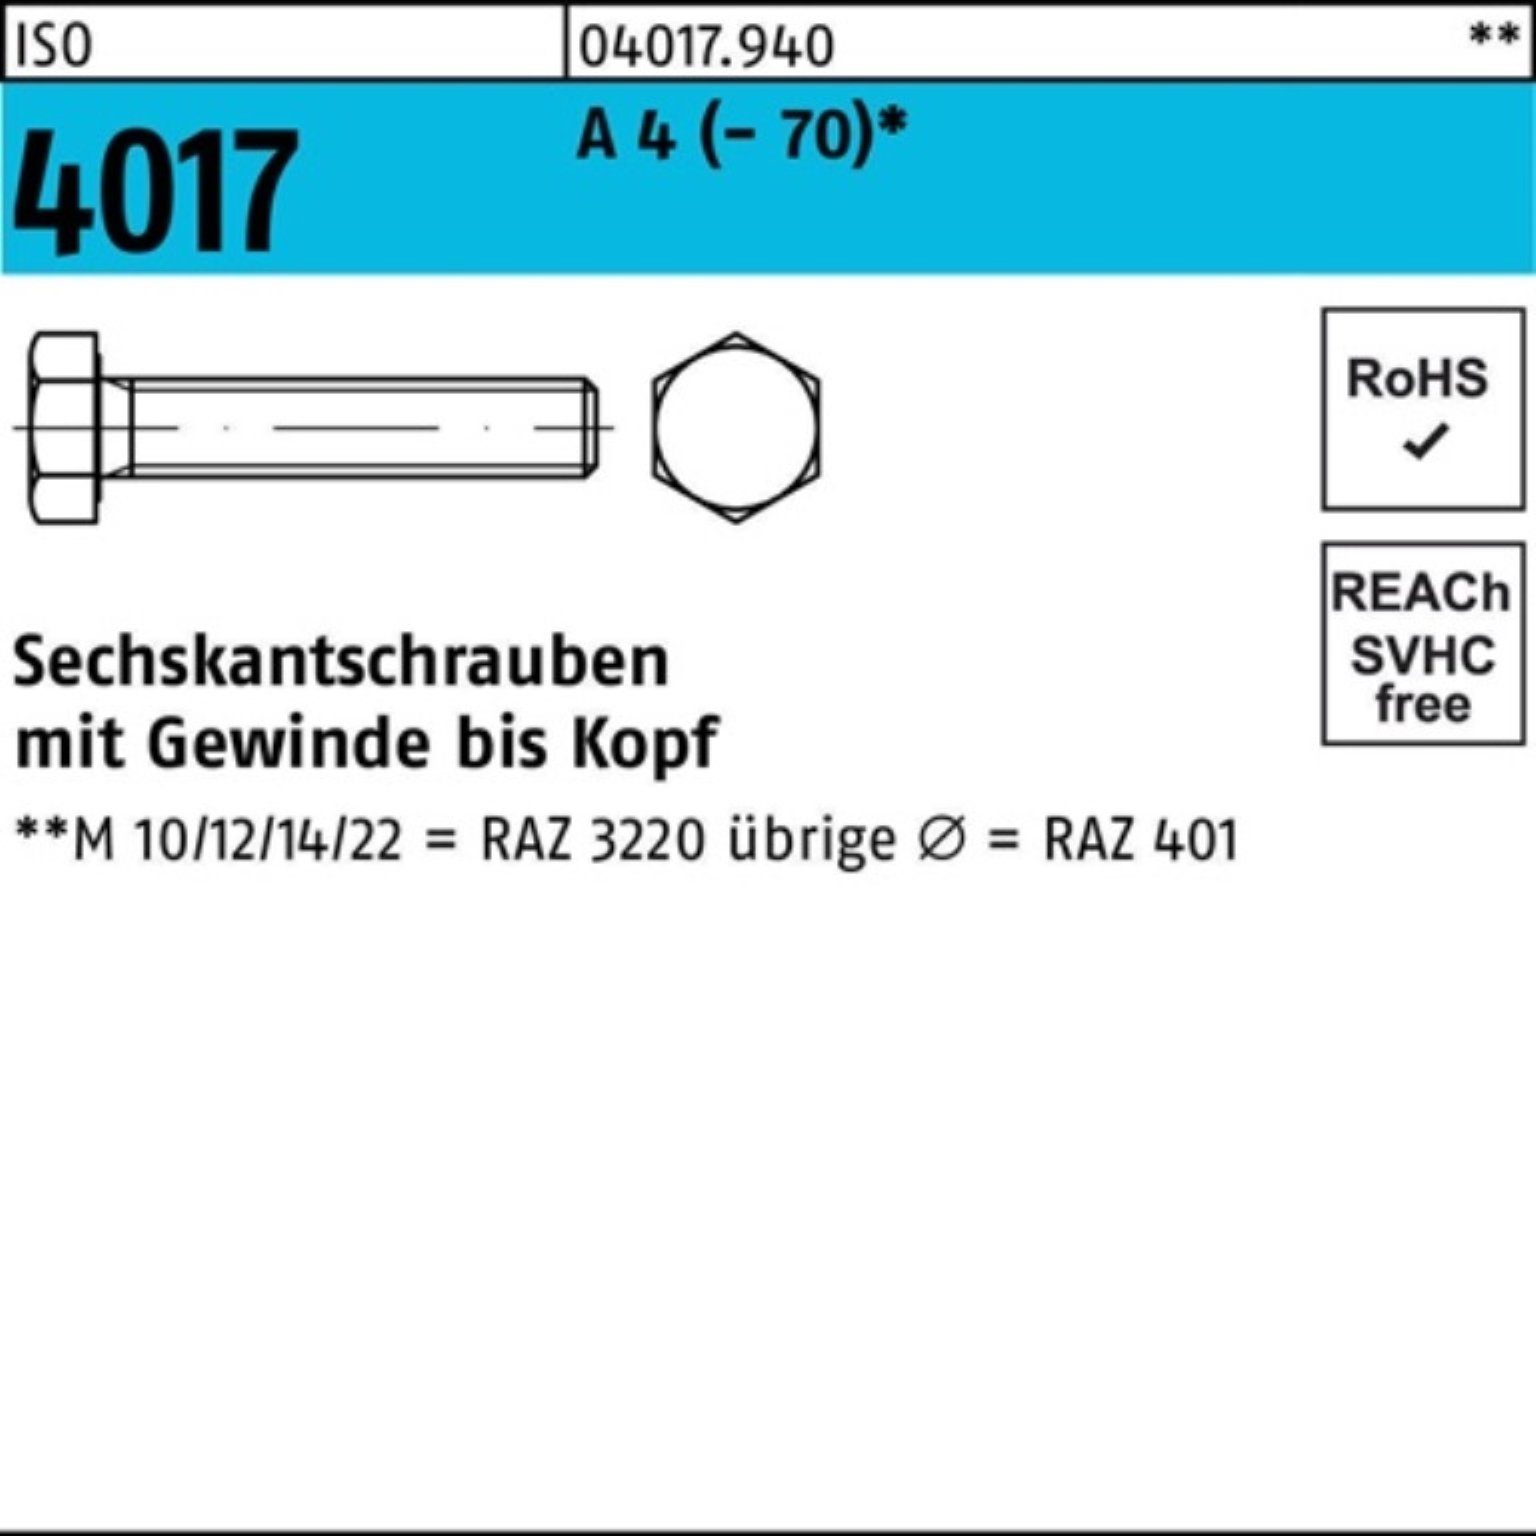 Bufab Sechskantschraube 100er Pack Sechskantschraube ISO 4017 VG M8x 120 A 4 (70) 1 Stück I